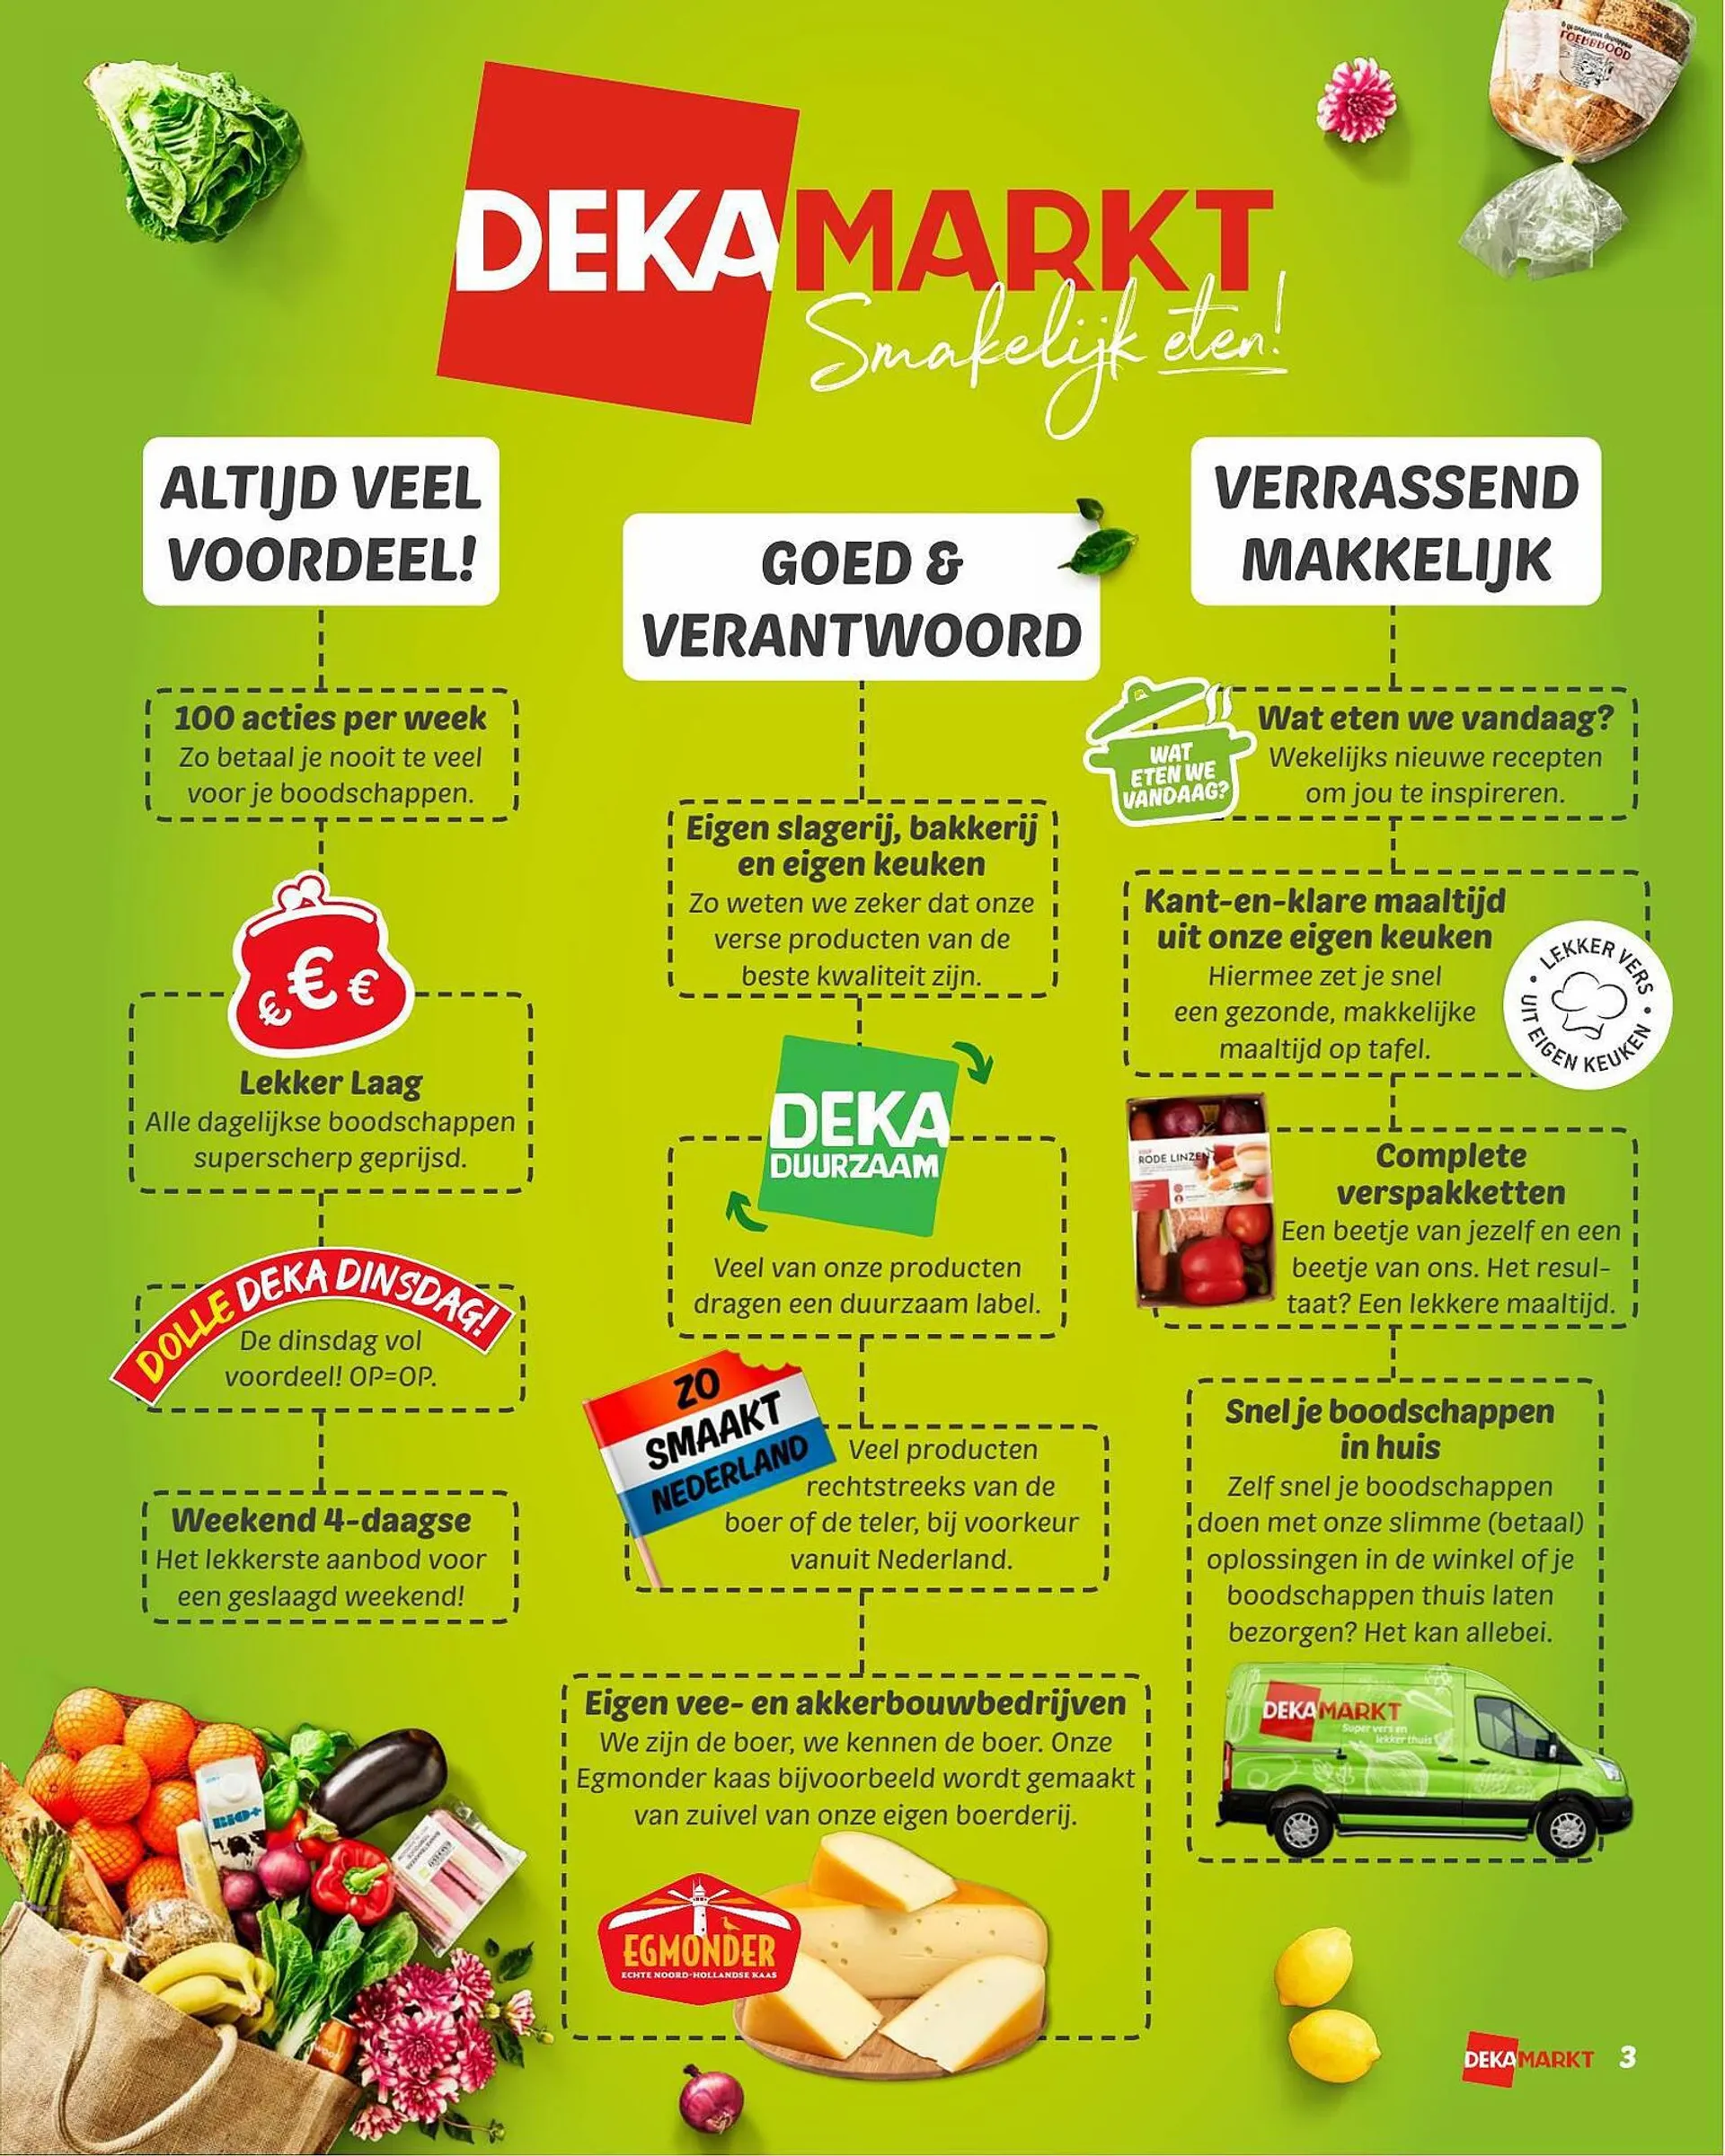 Dekamarkt magazine - 3